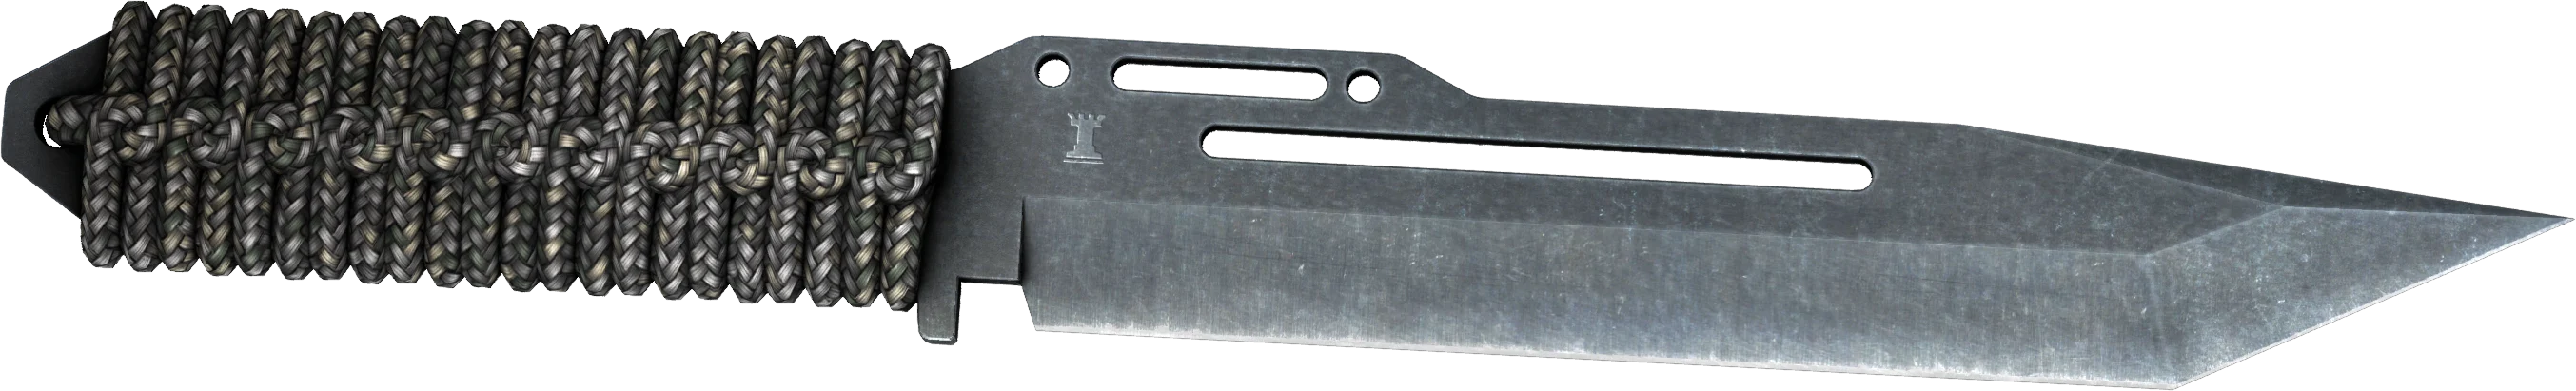 Paracord Knife Vanilla